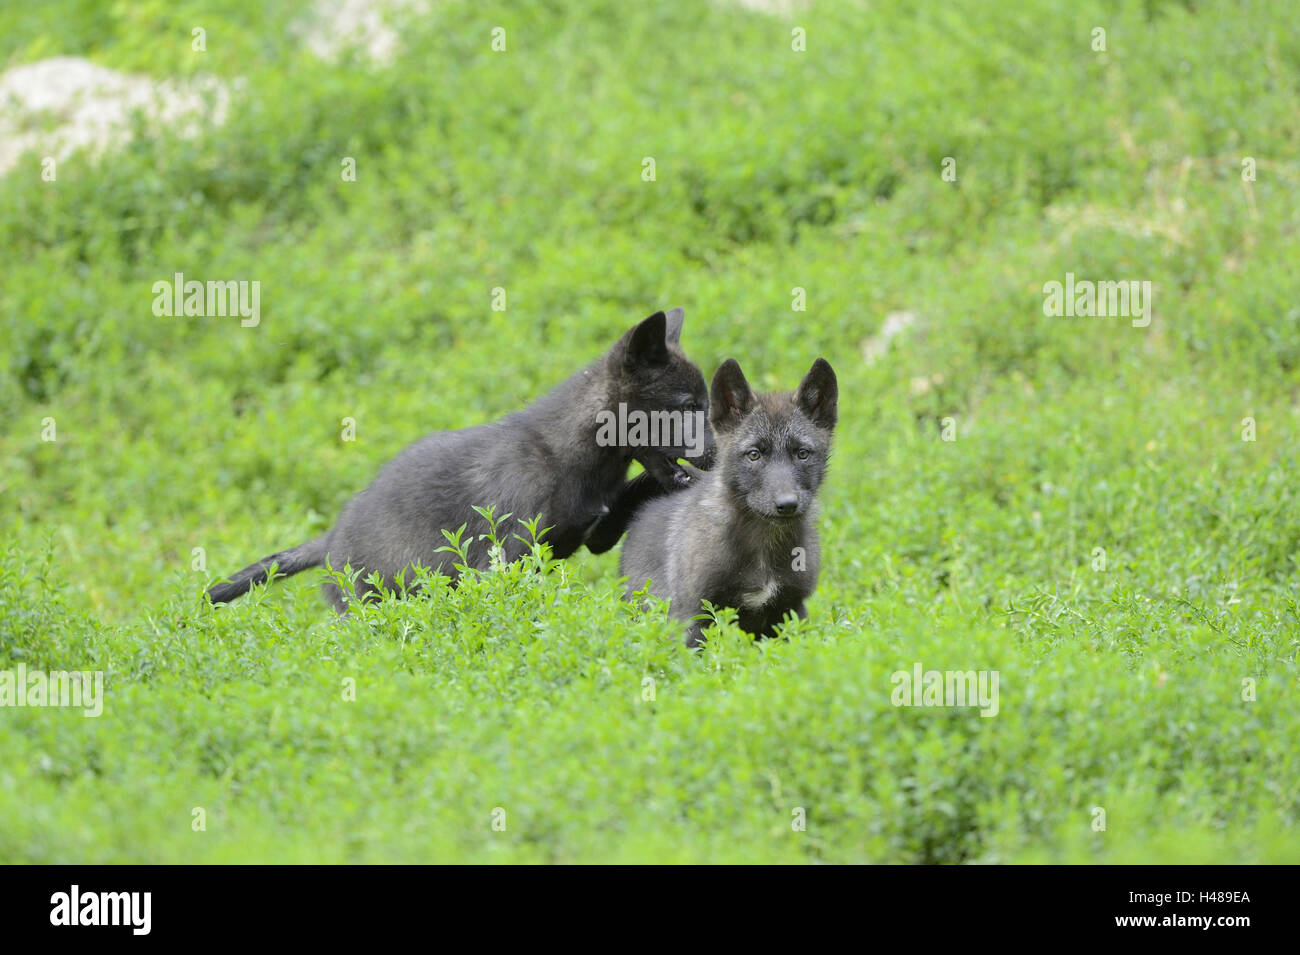 Bois de l'est le loup, Canis lupus lycaon, chiots, meadow, debout, de face, looking at camera, Banque D'Images